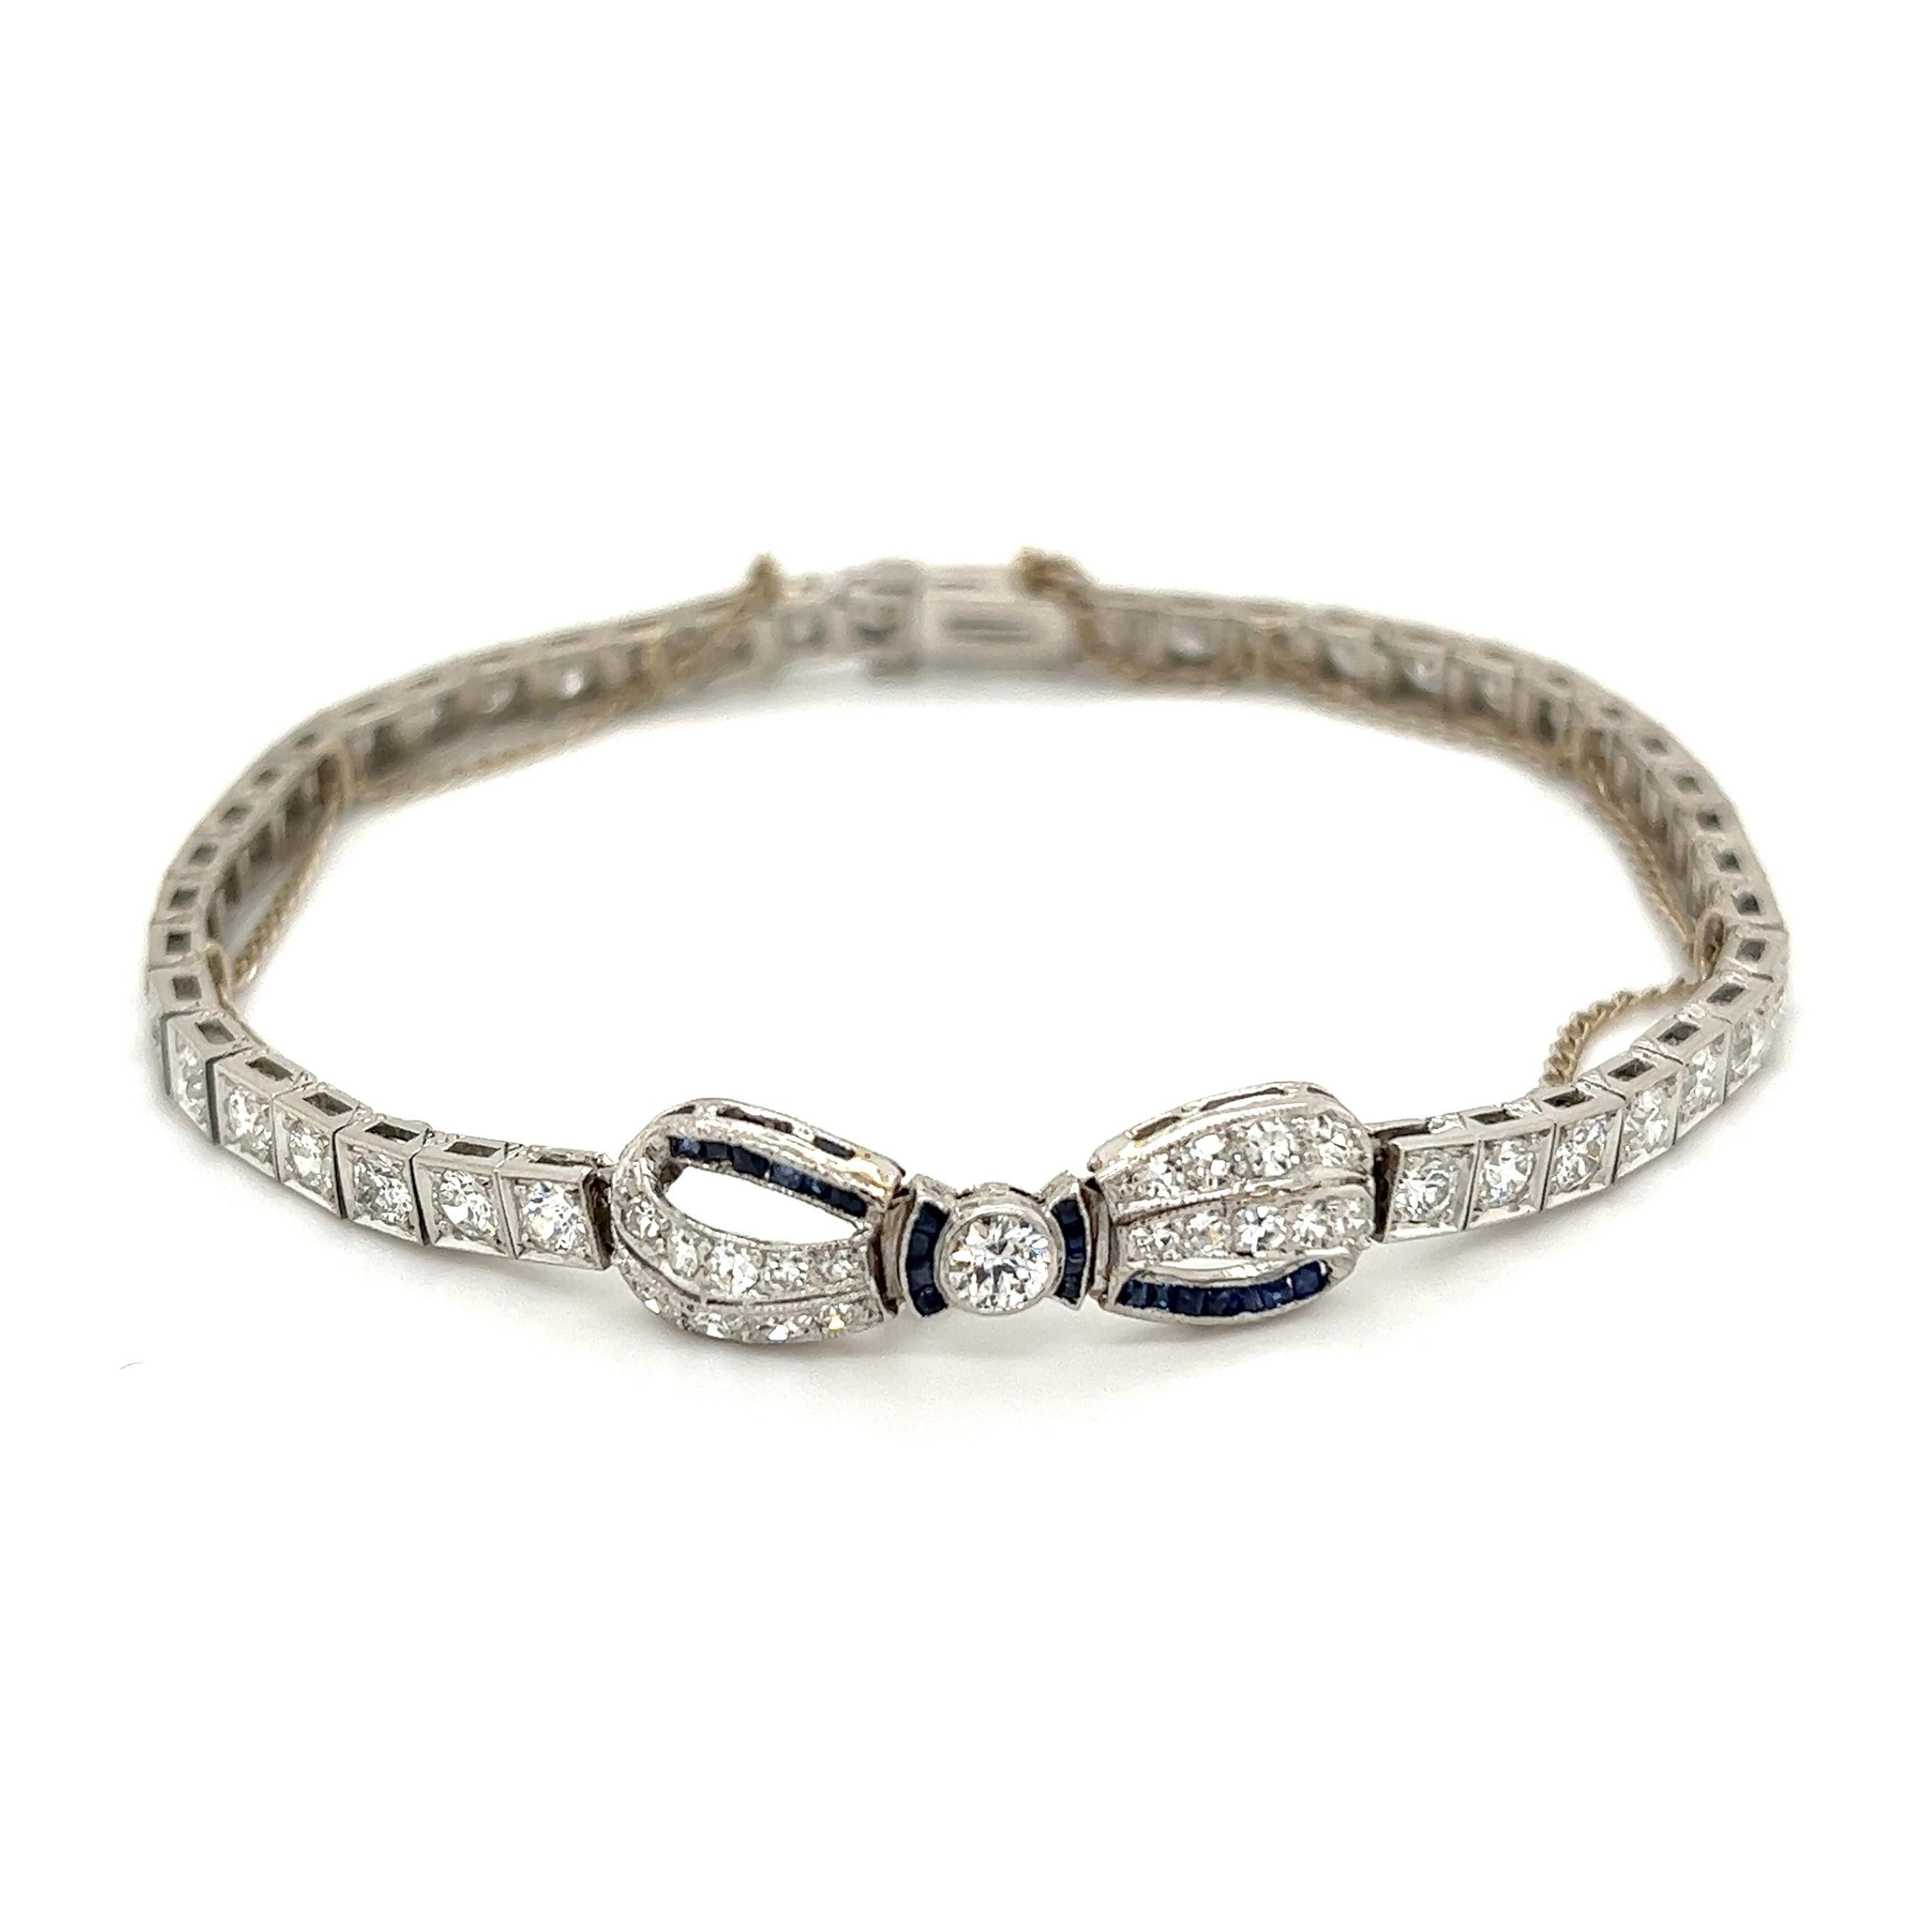 Einfach schön! Deluxe Fine Quality BLACK STARR & FROST Art Deco Diamond and Sapphire Platinum Bracelet, zentriert eine Schleife. Handbesetzt mit Diamanten, Gewicht ca. 5,25 tcw und blauen Saphiren, ca. 0,30 tcw. Messung ca. 7,25